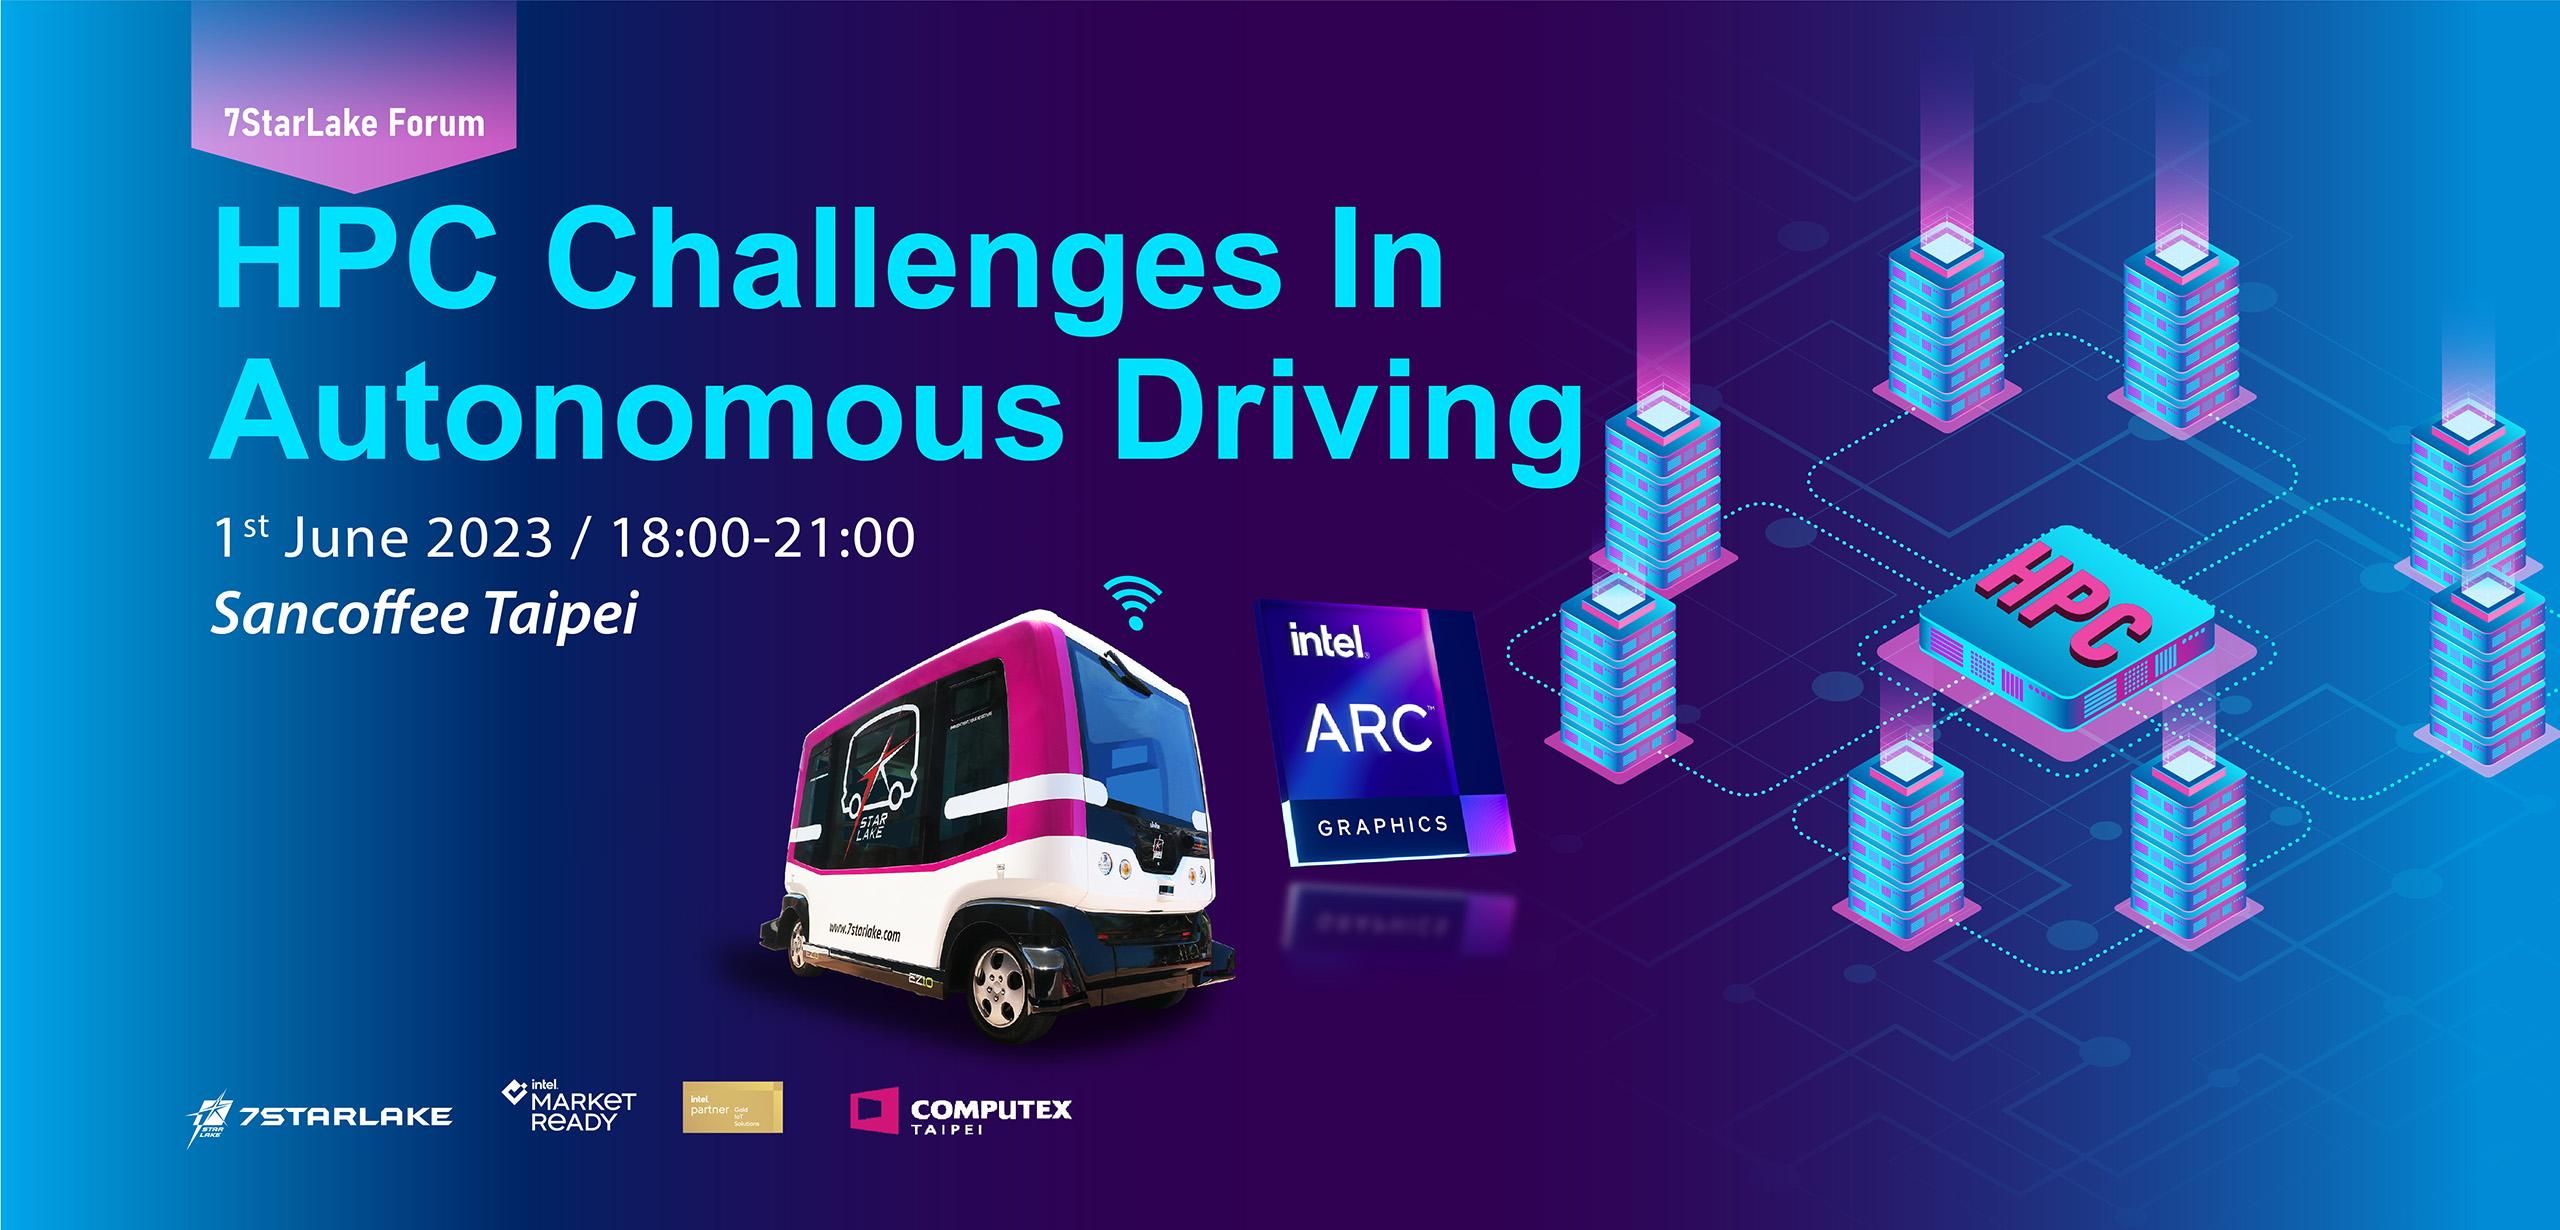  HPC Challenges In Autonomous Driving